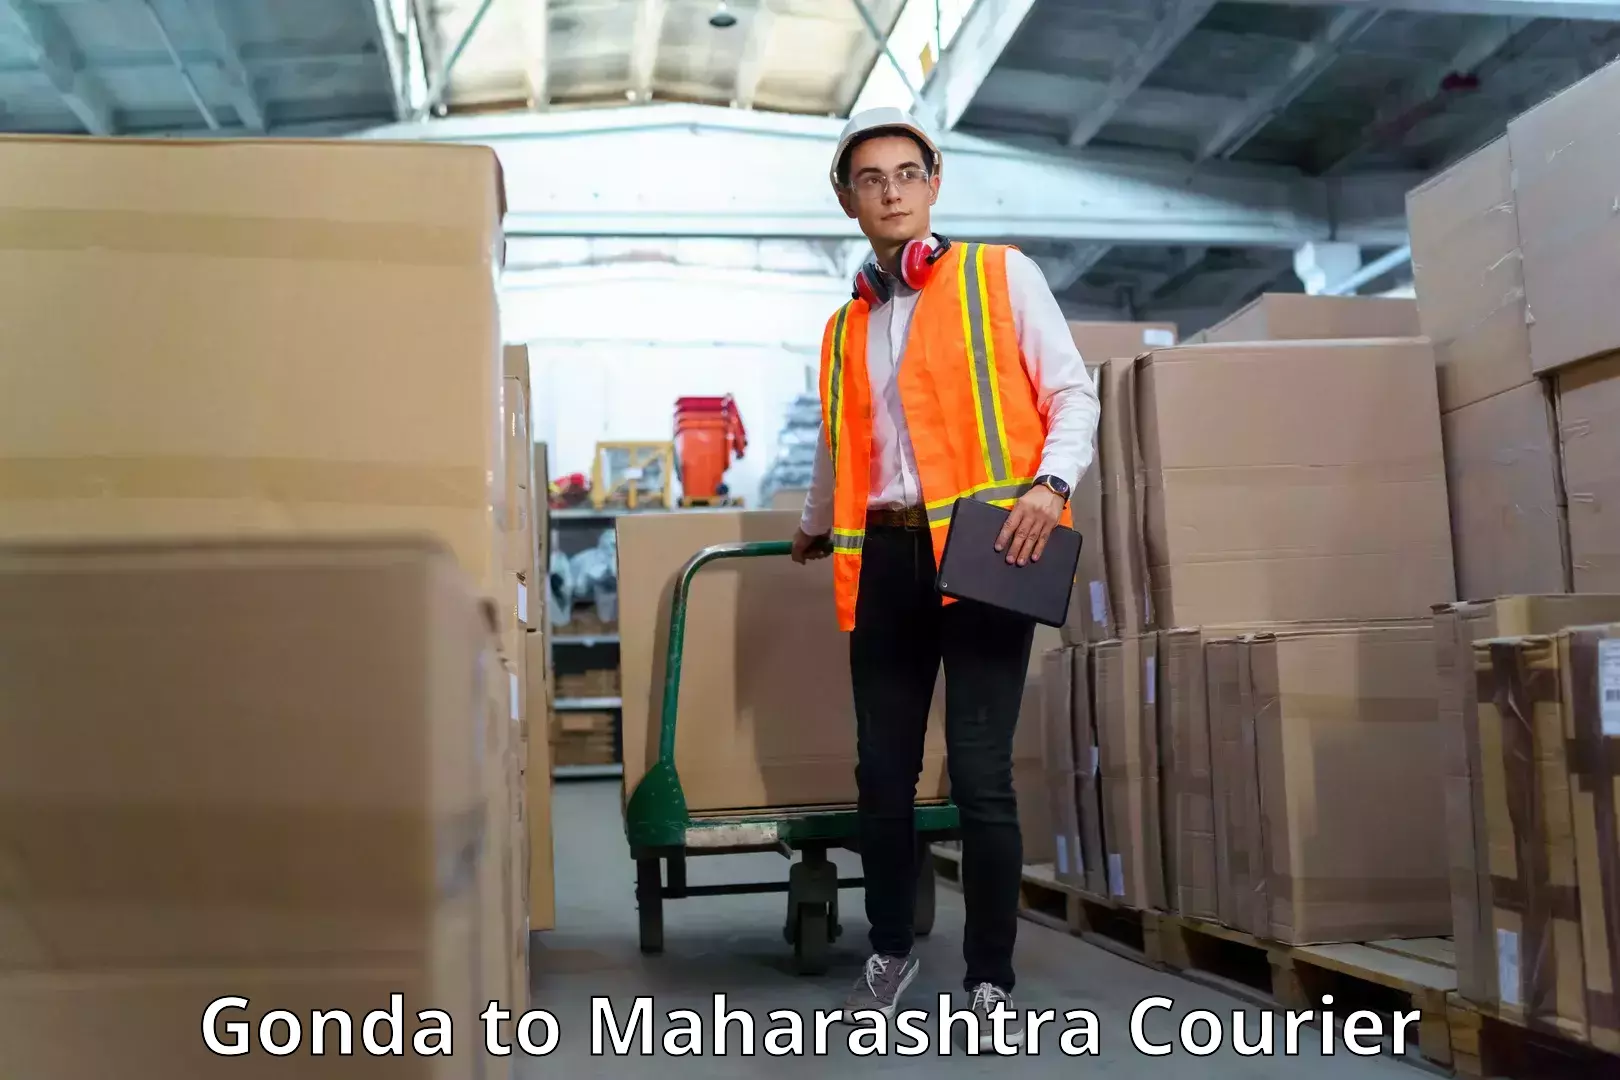 On-call courier service Gonda to Maharashtra